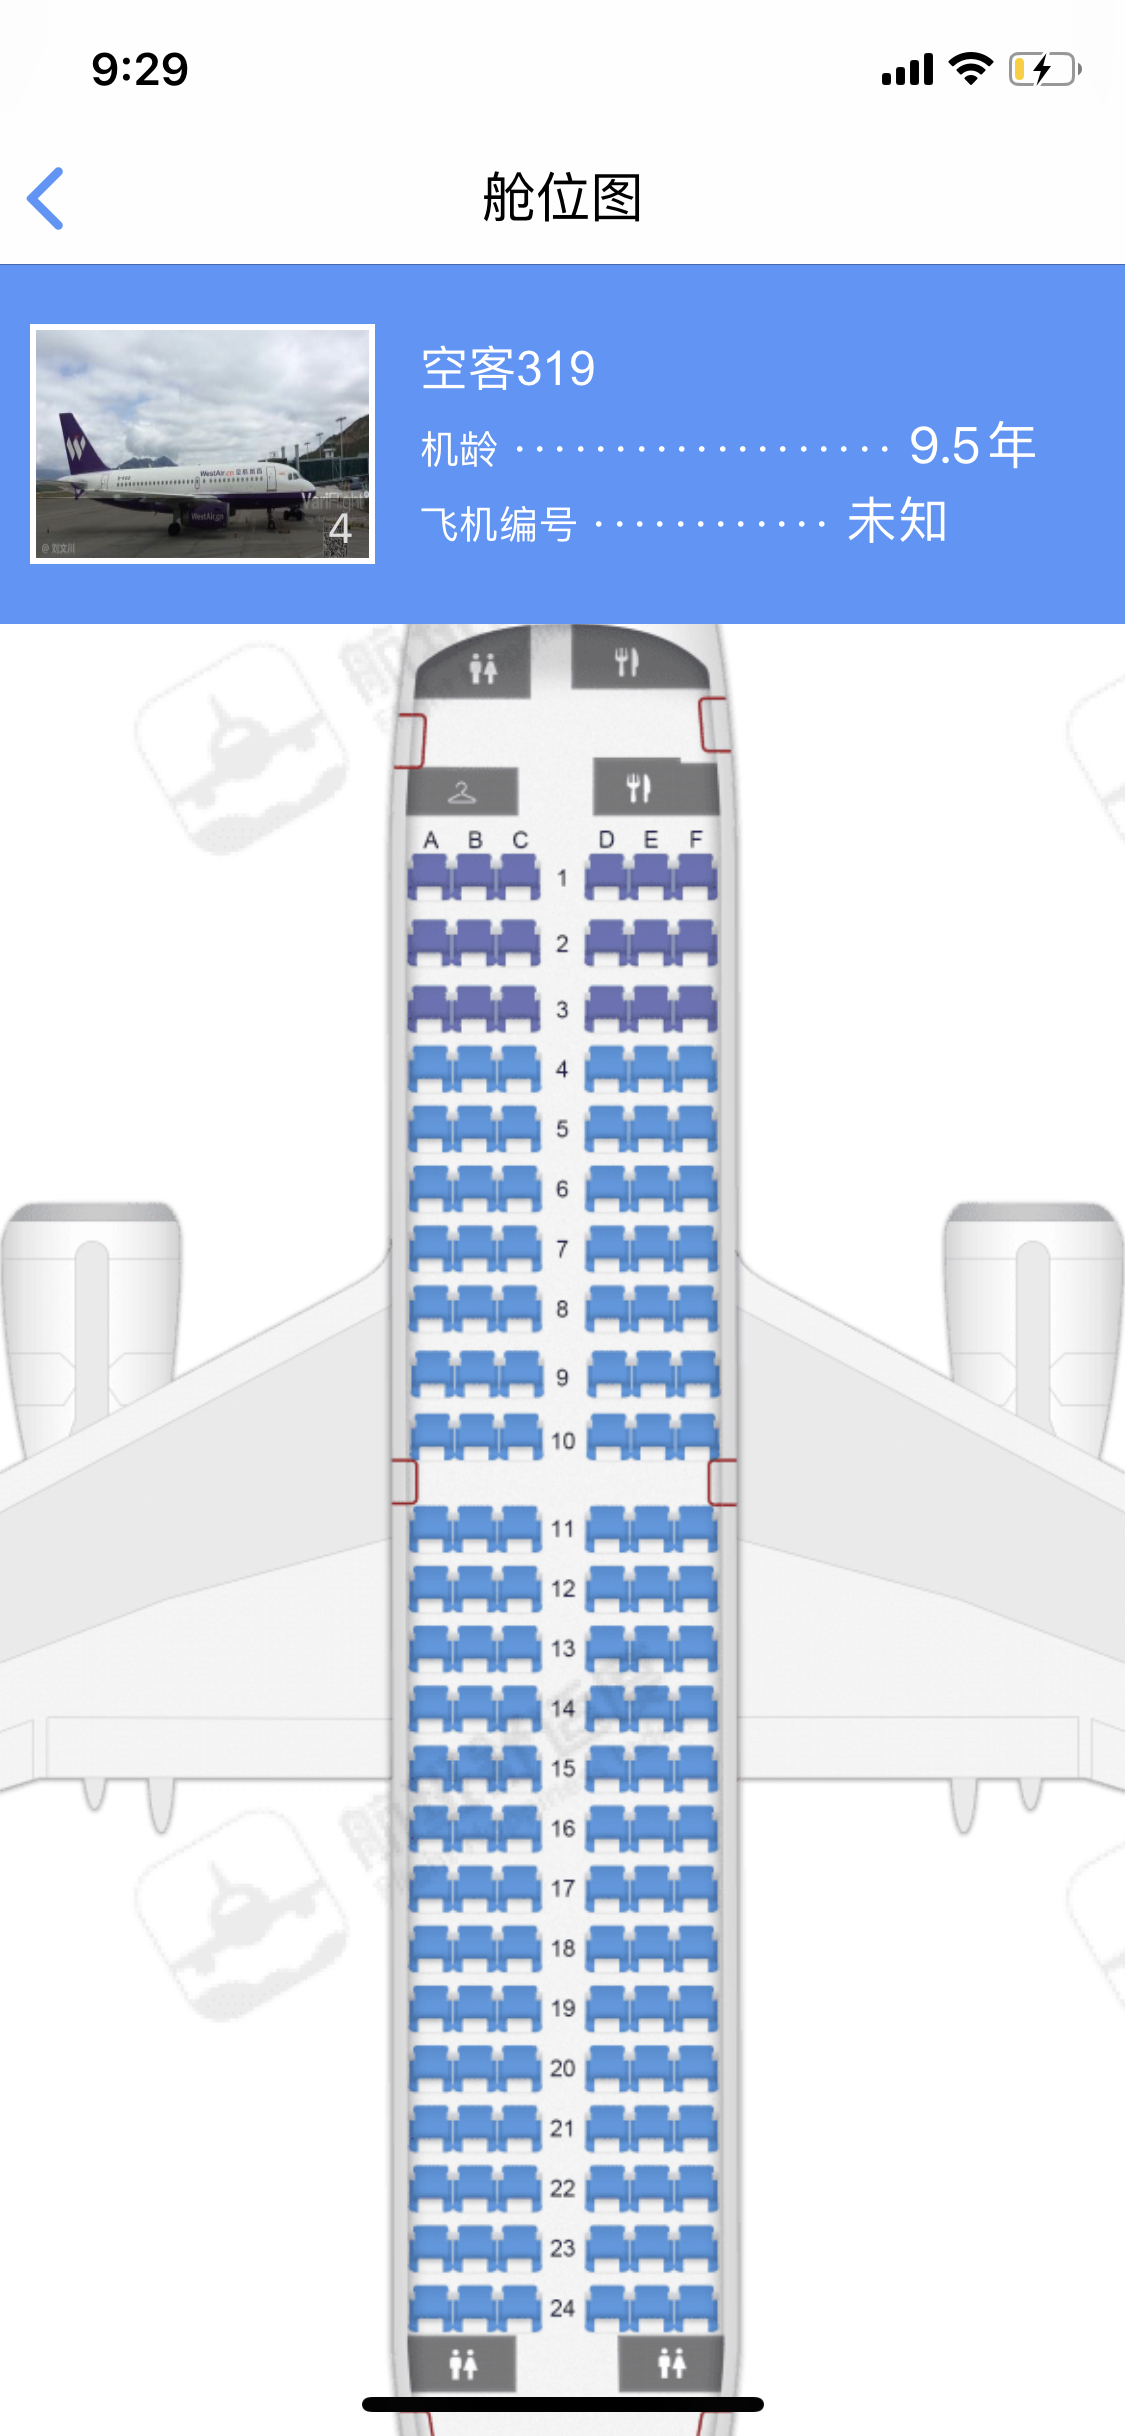 737-300座位图图片